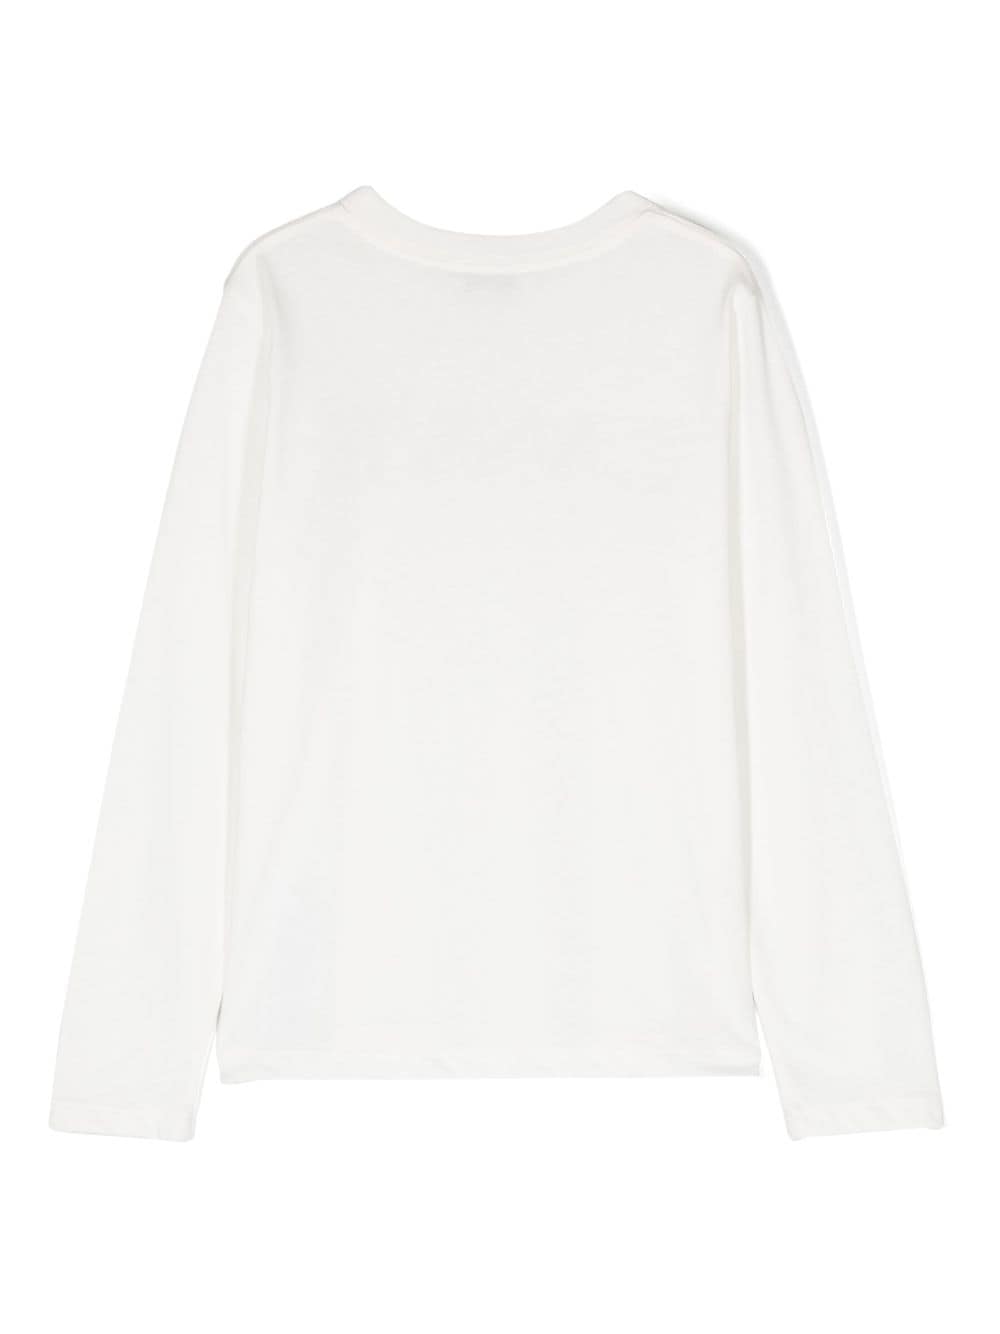 Shop Lanvin T-shirt Nera In Jersey Di Cotone Bambino In Bianco